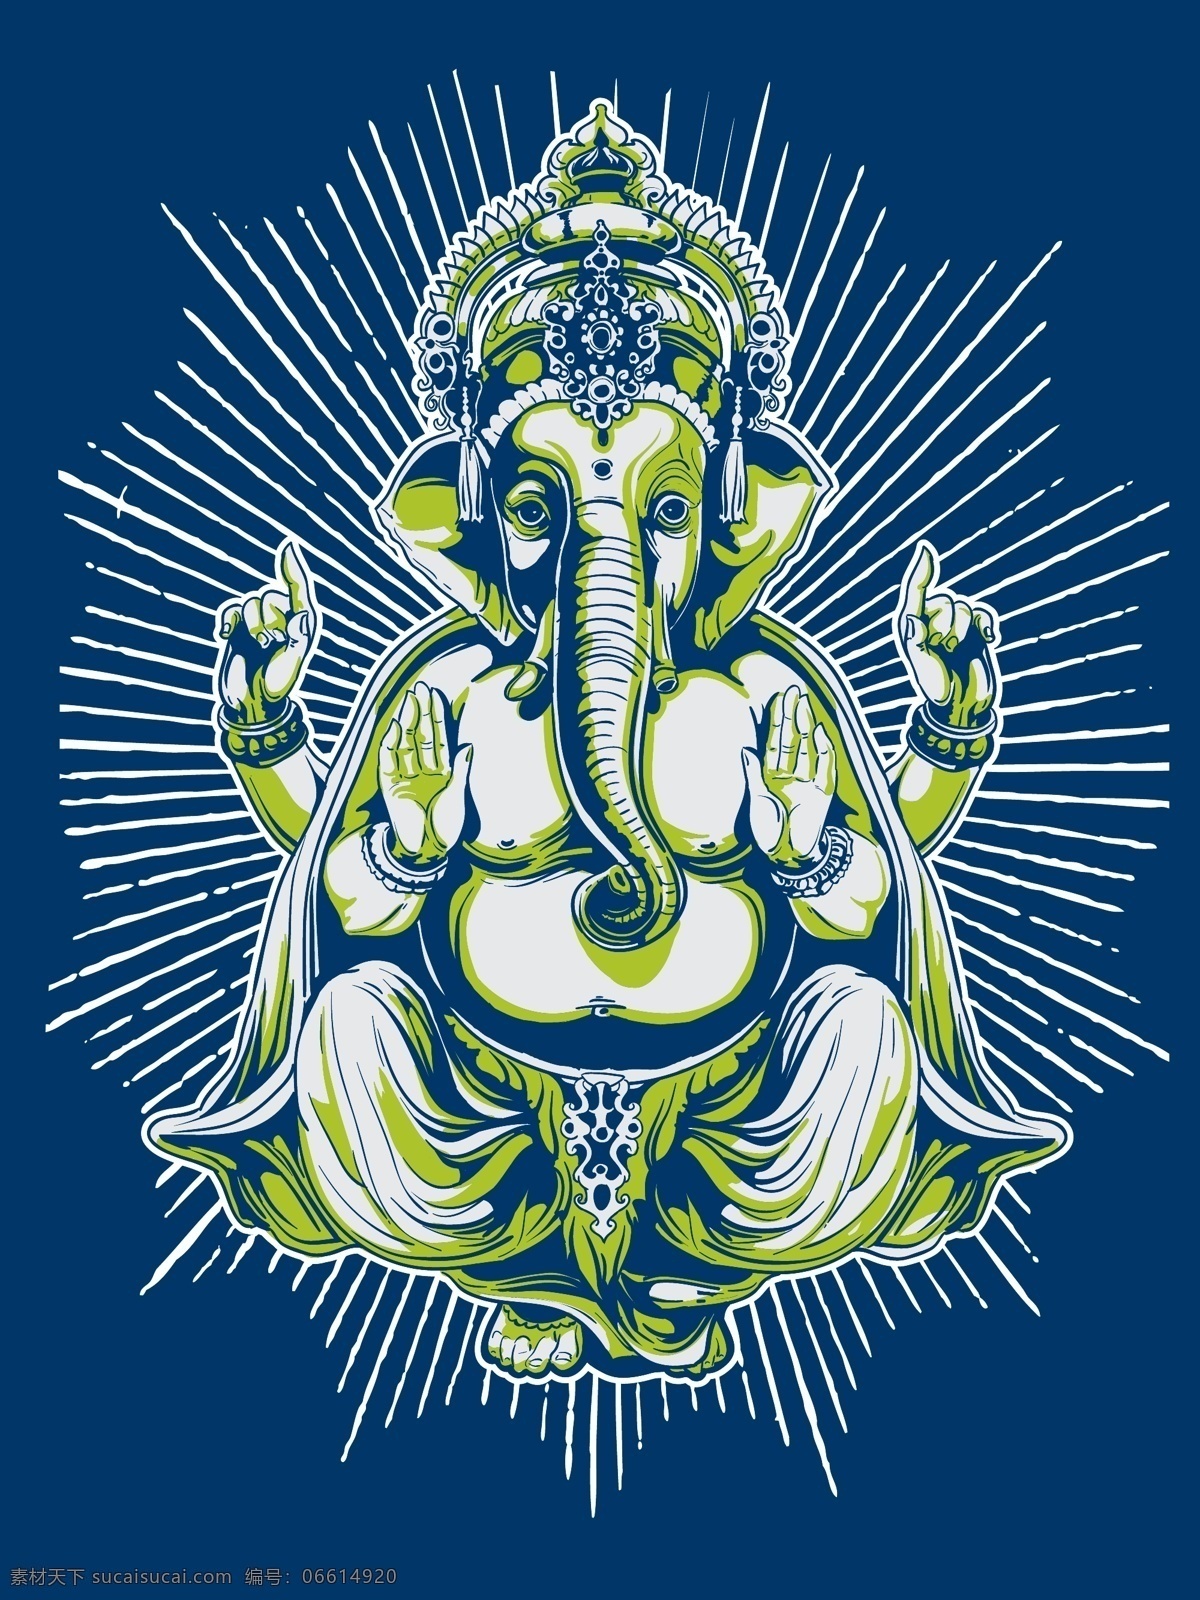 宗教 大象 神像 潮流 鬼脸 标志图标 其他图标